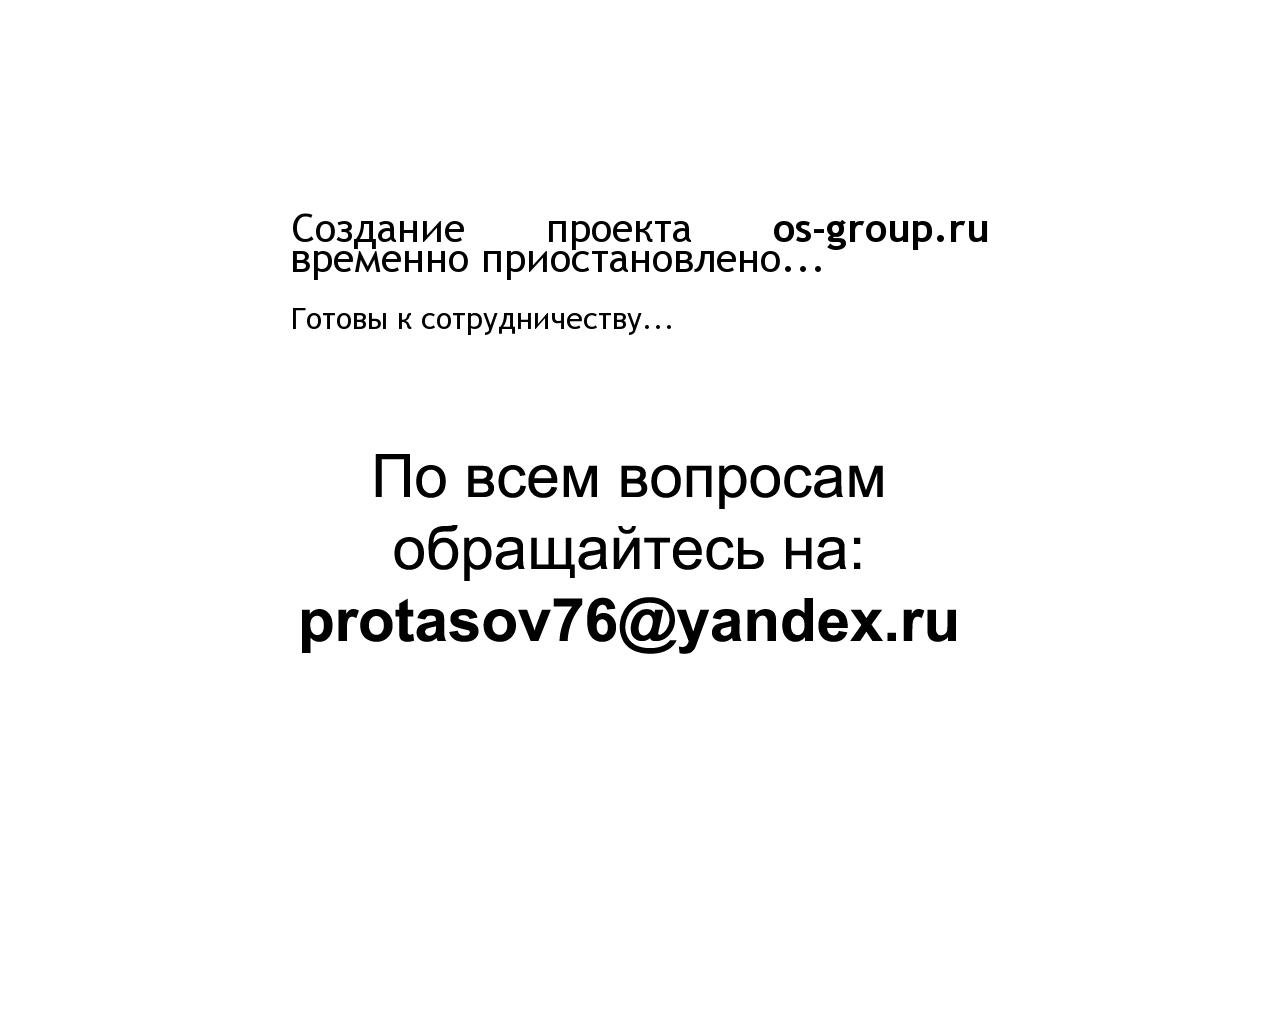 Изображение сайта os-group.ru в разрешении 1280x1024